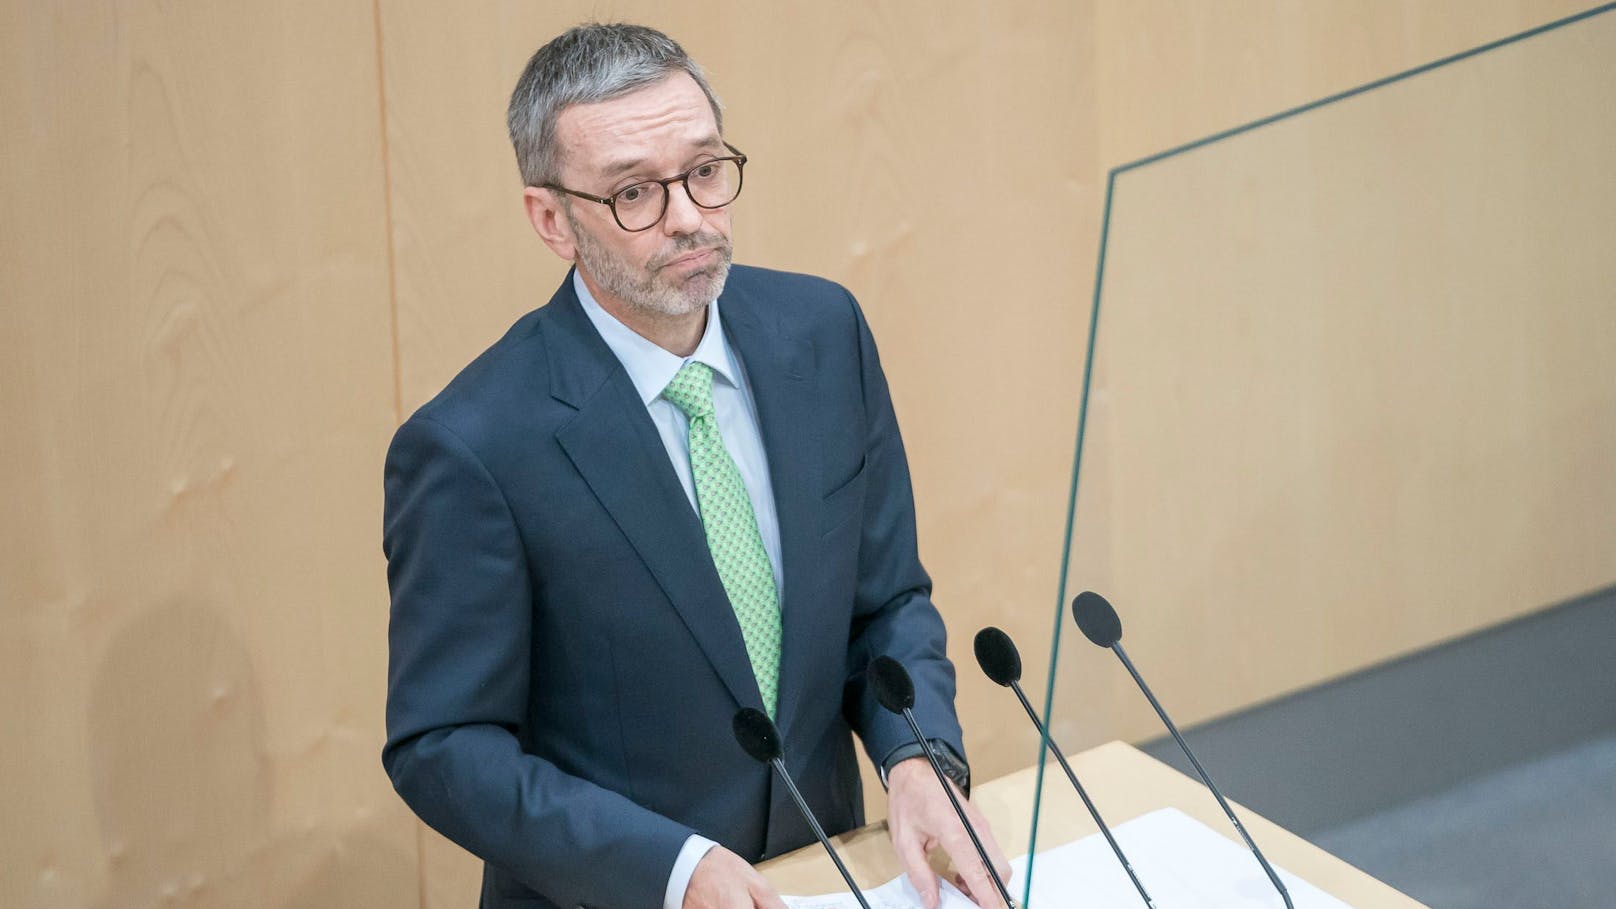 Nach kurzer Pause ist Herbert Kickl rechtzeitig zurück, um am Mittwoch den FPÖ-Kandidaten für die BP-Wahl bekannt zu geben.